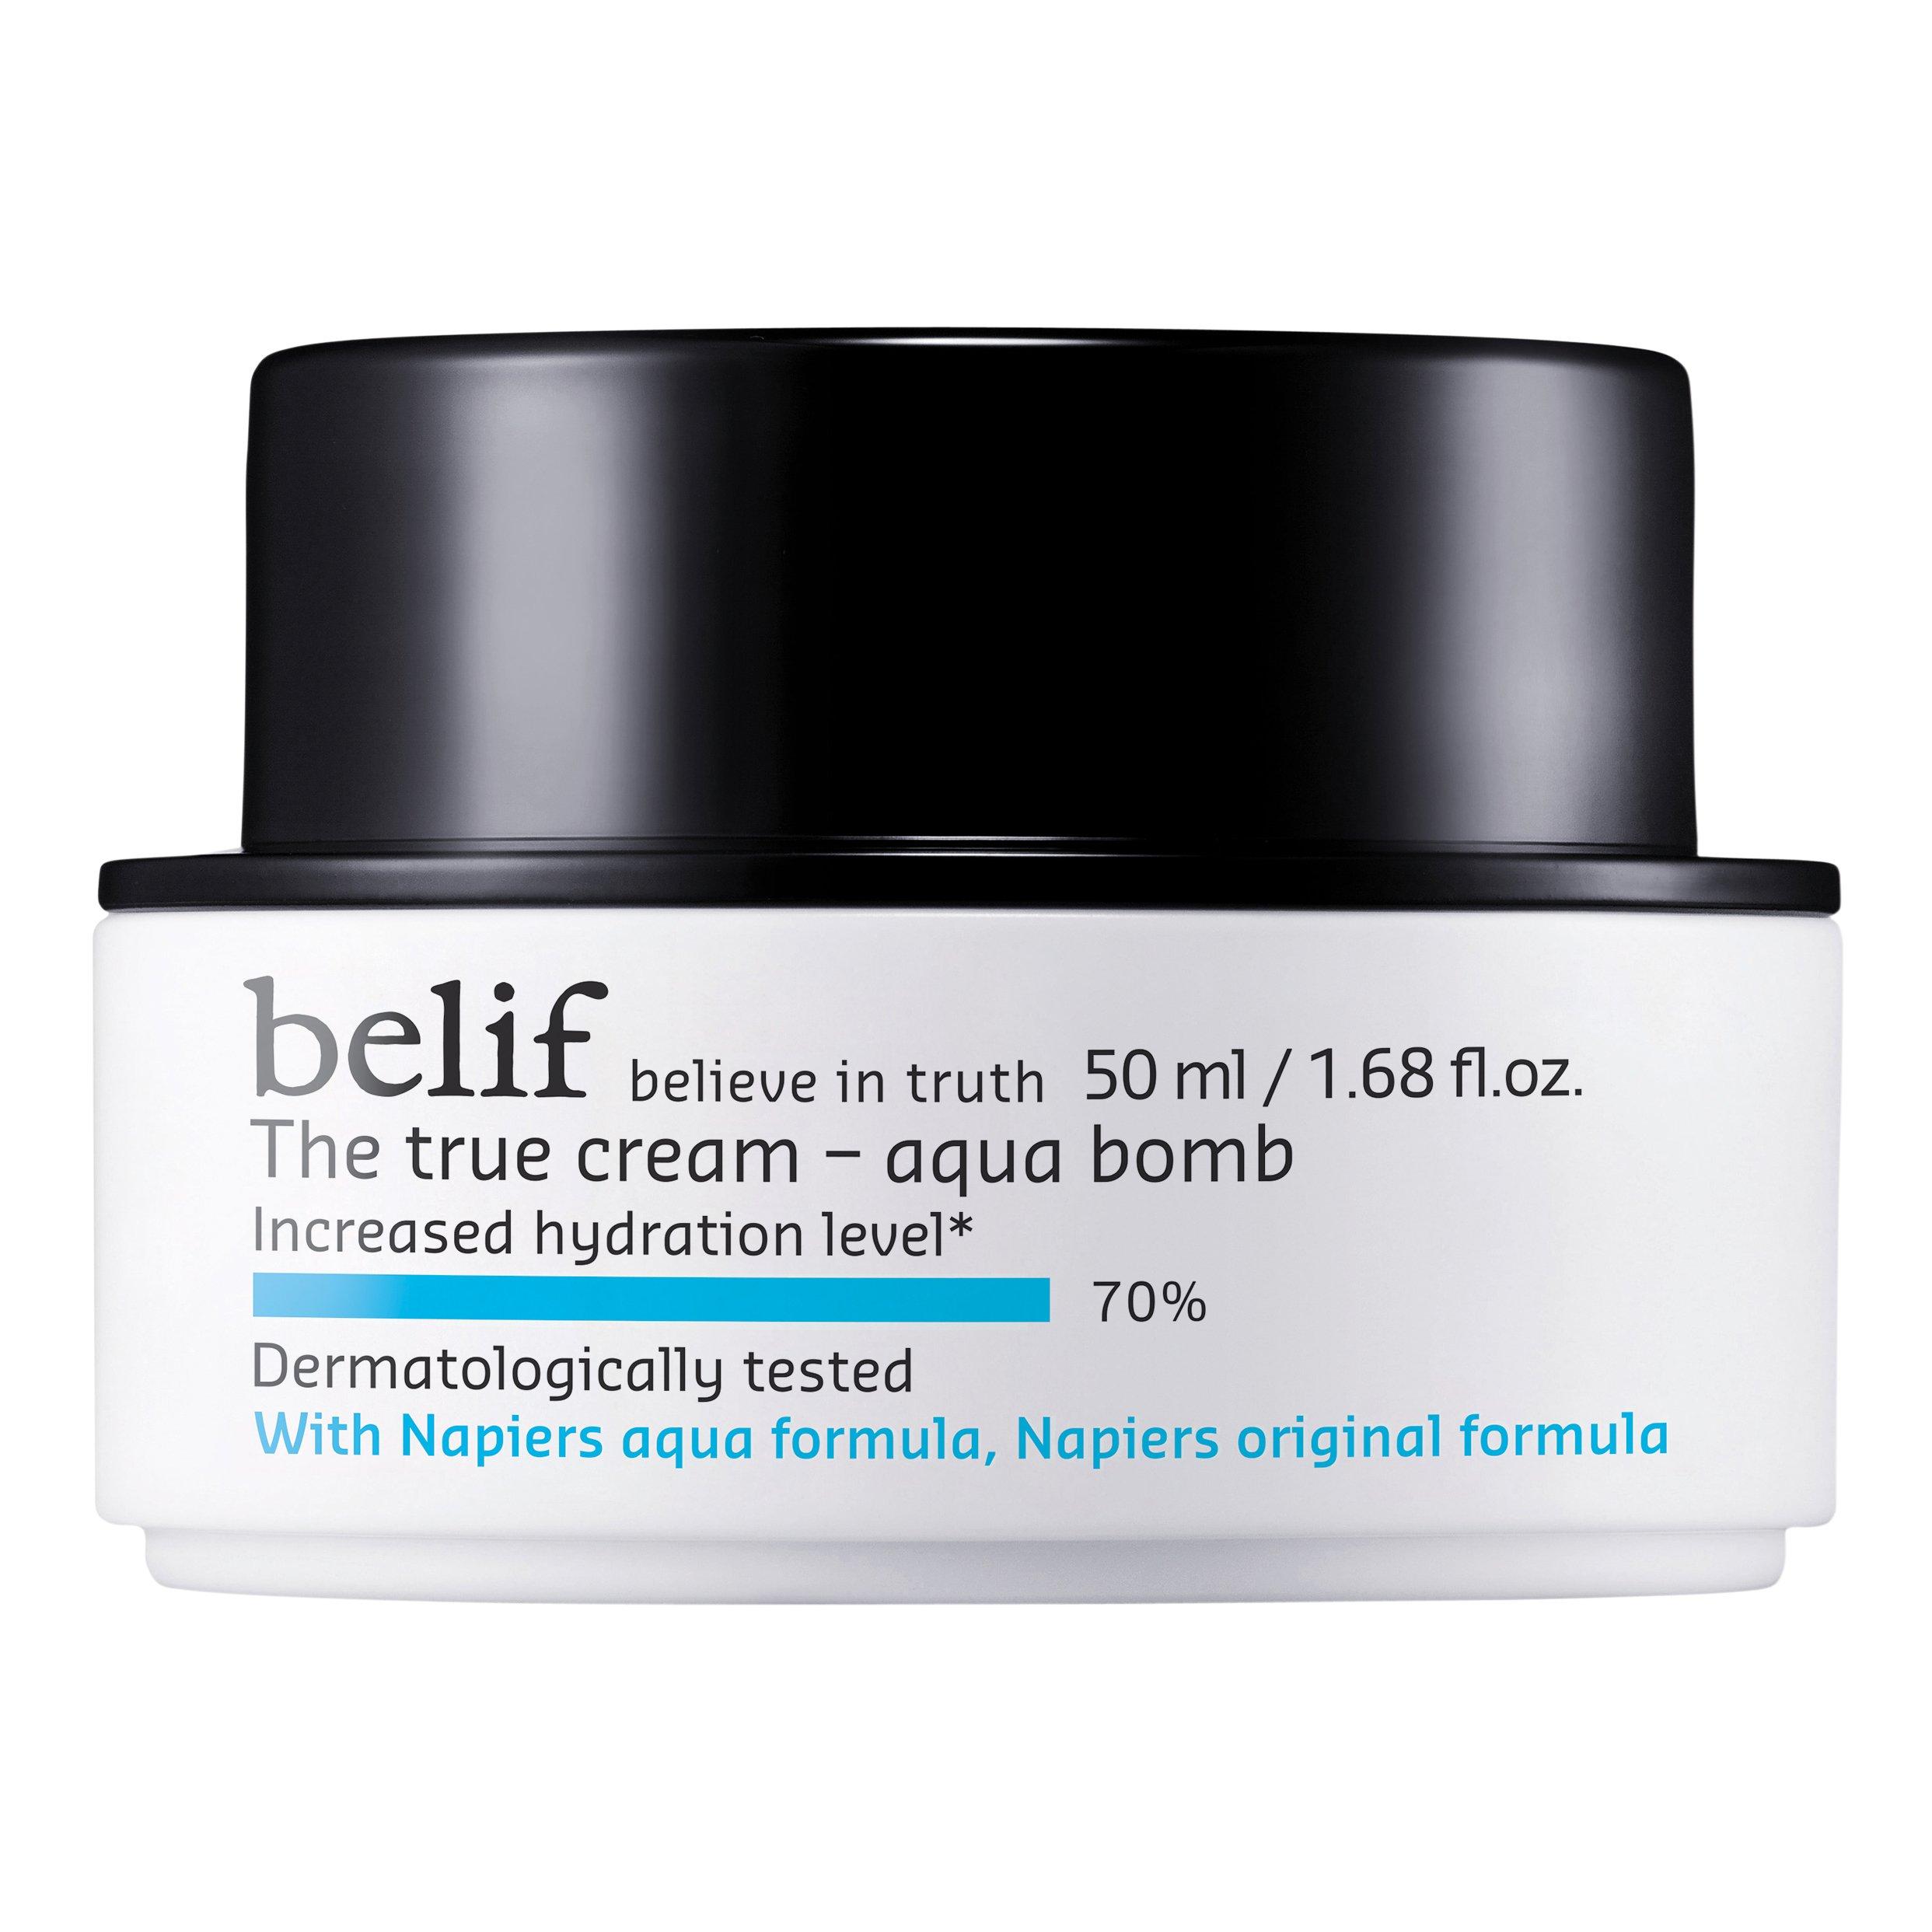 Image of belif The True Cream - Aqua Bomb - The True Cream - Aqua Bomb